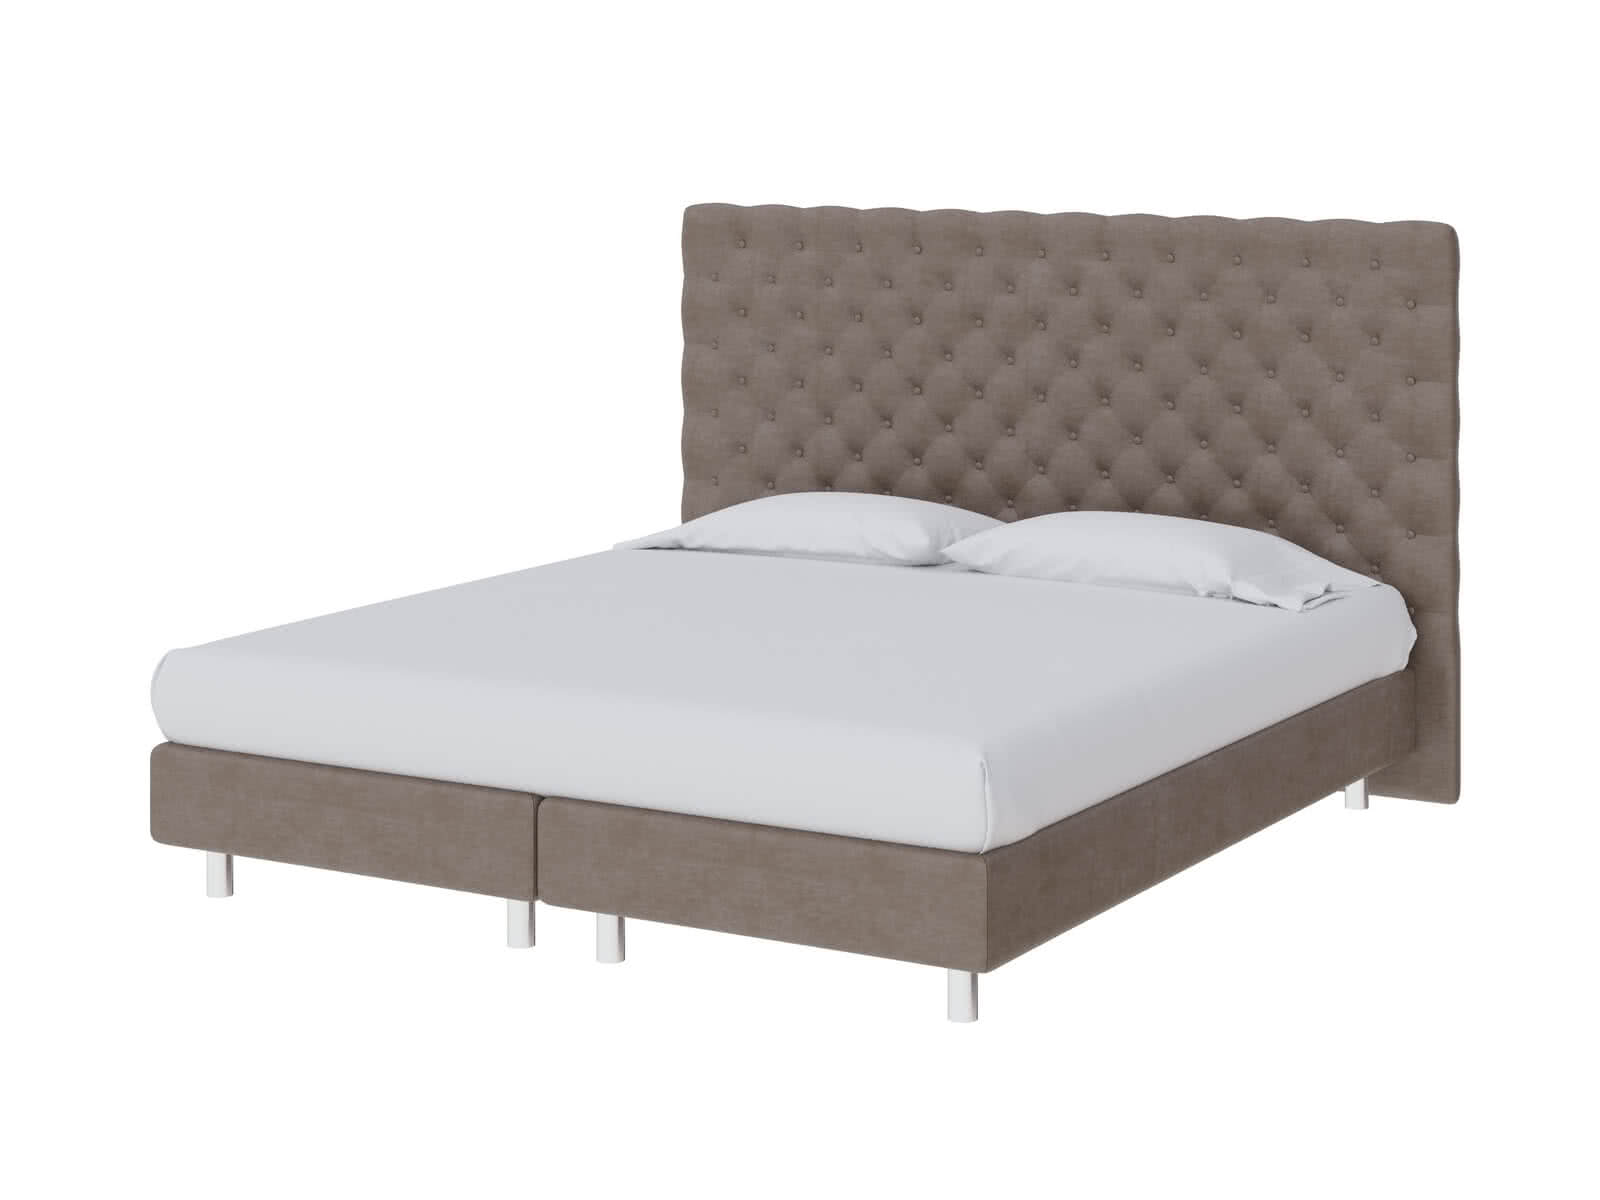 Купить кровать ProSon Кровать ProSon Europe Paris Lift, Лофти Лён 90 х 200 см Лофти Лён дешево на официальном сайте